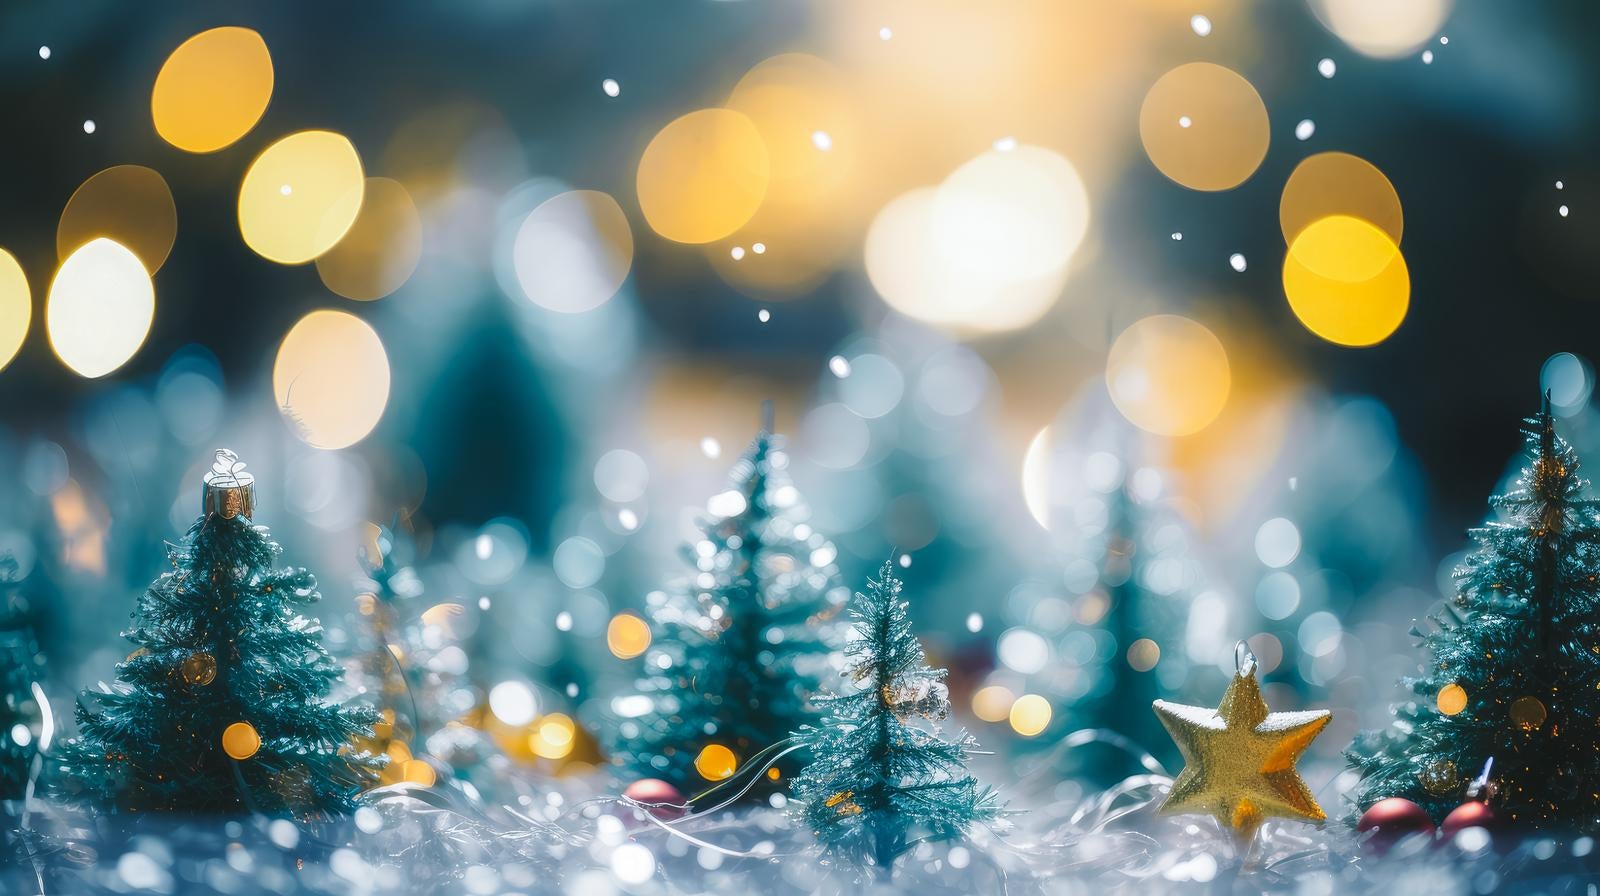 「ミニチュアのクリスマスツリーと街明かり」の写真